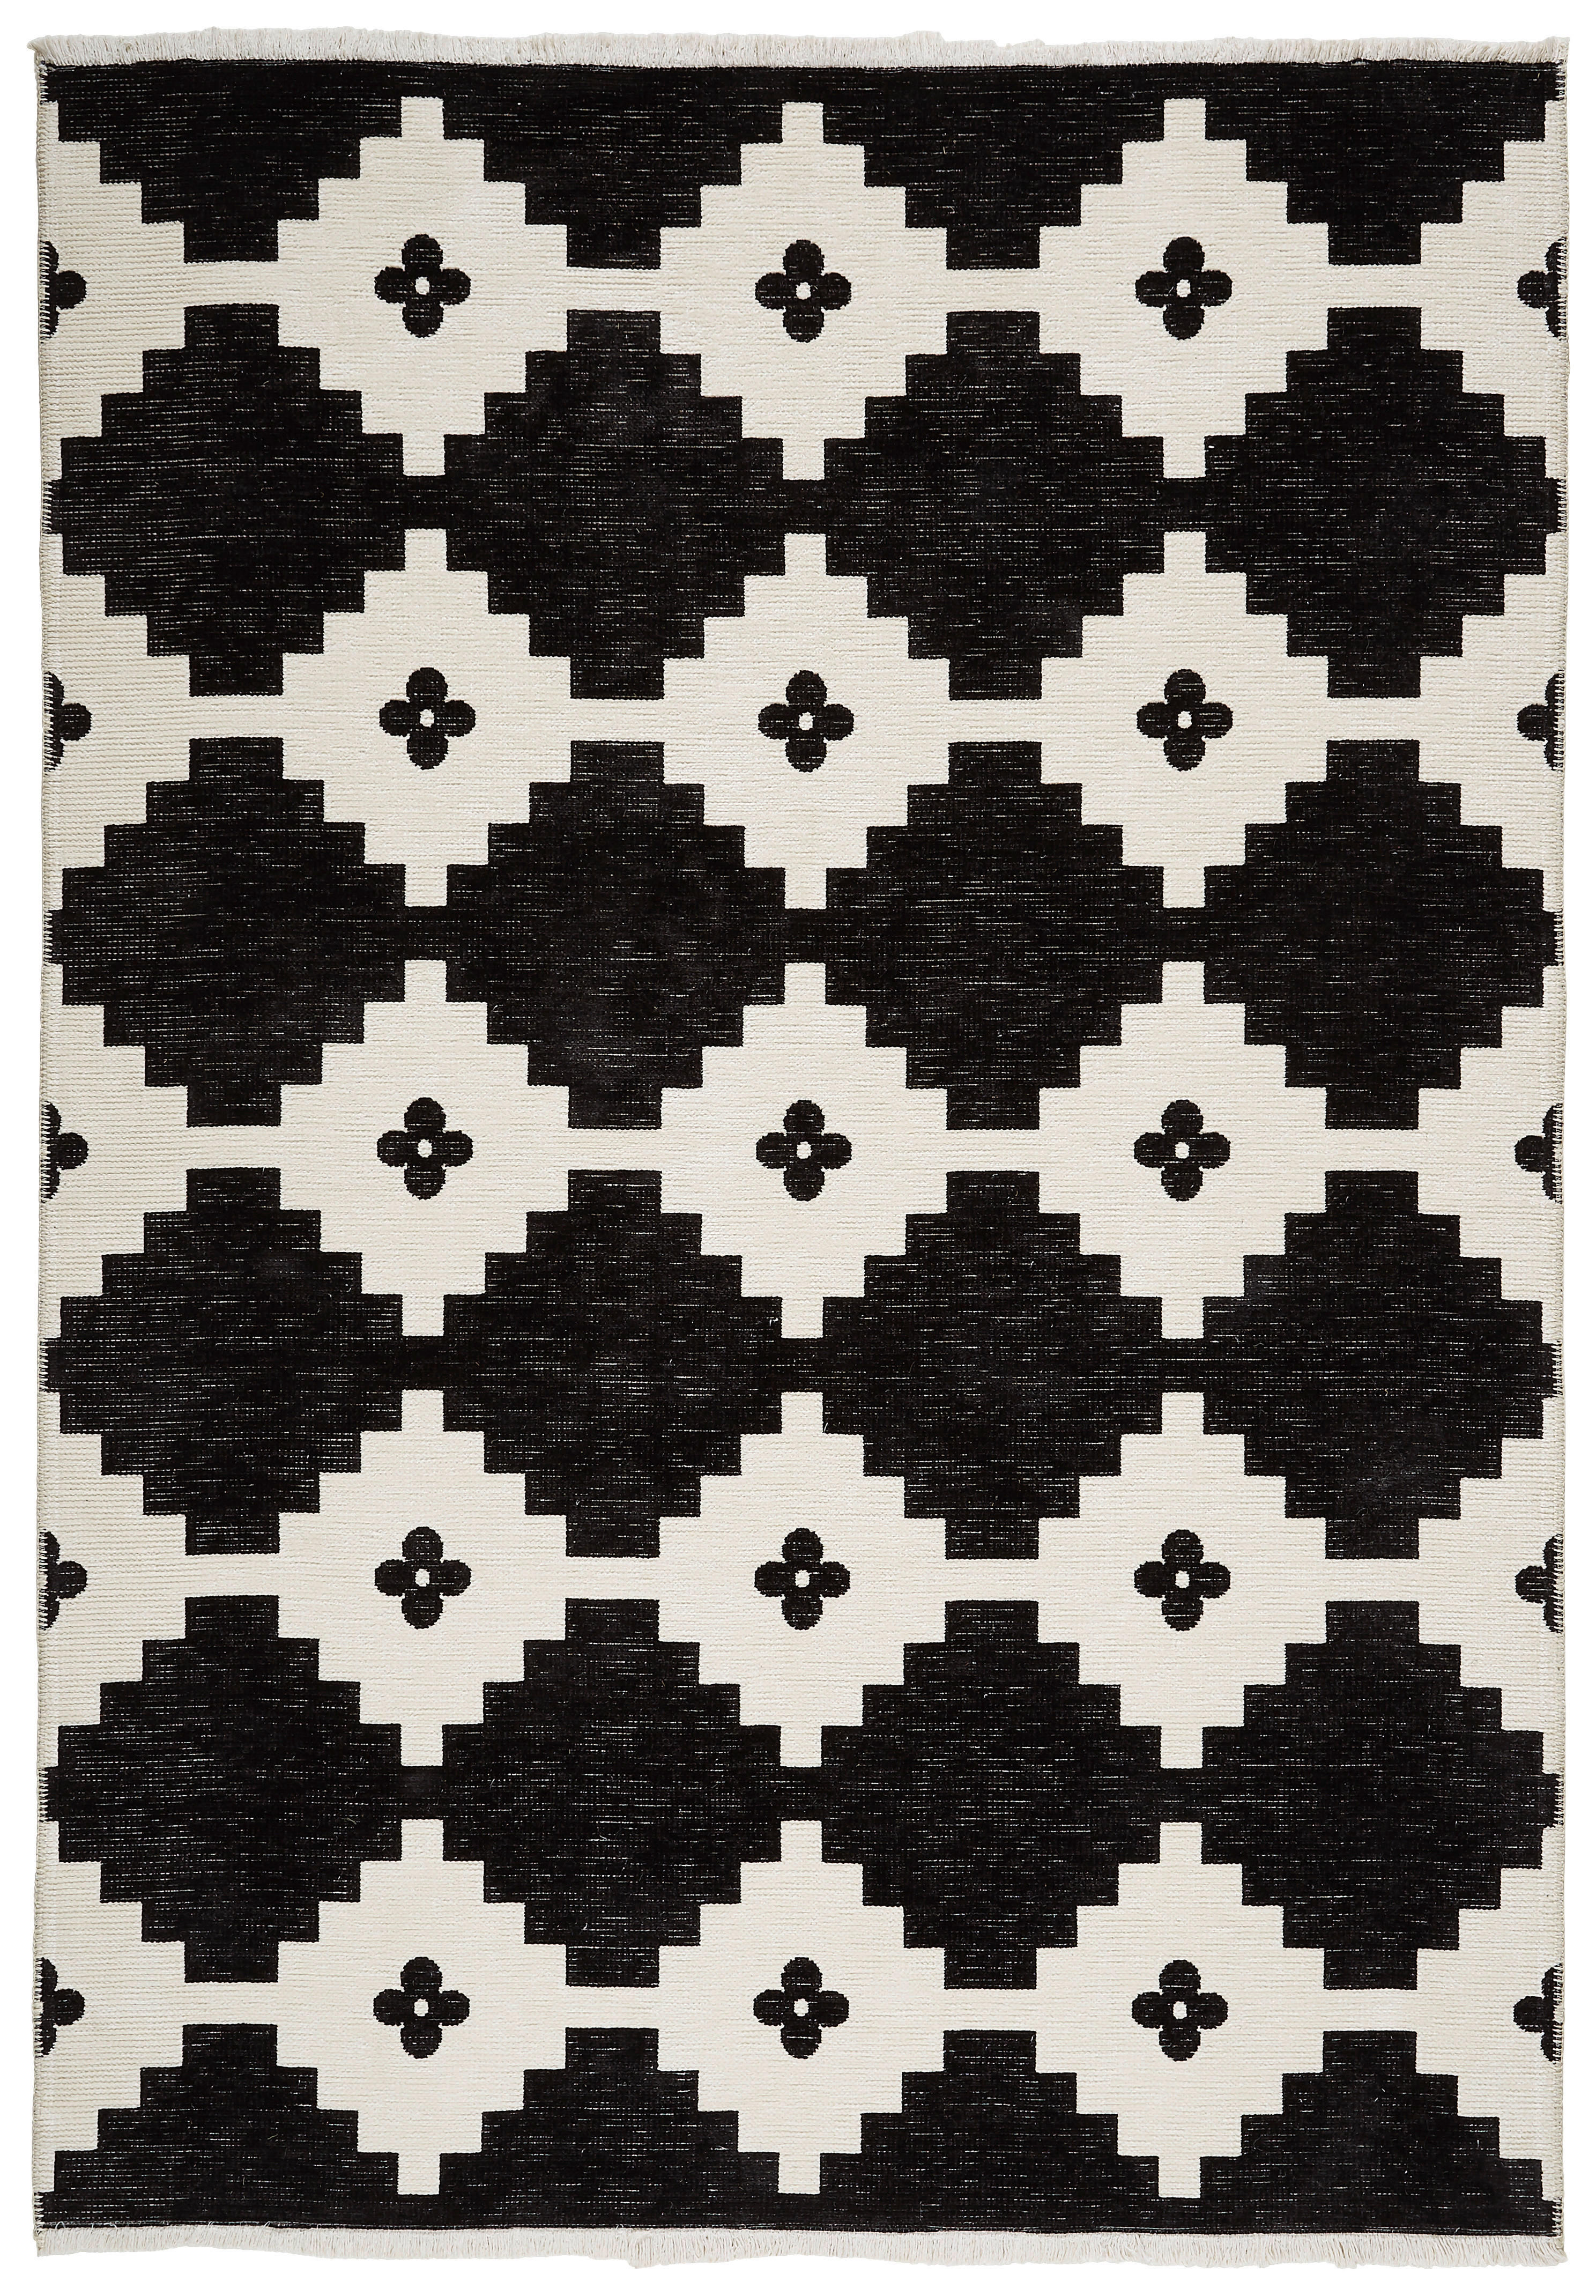 WENDETEPPICH  160/230 cm  Schwarz, Weiß   - Schwarz/Weiß, Design, Textil (160/230cm) - Novel